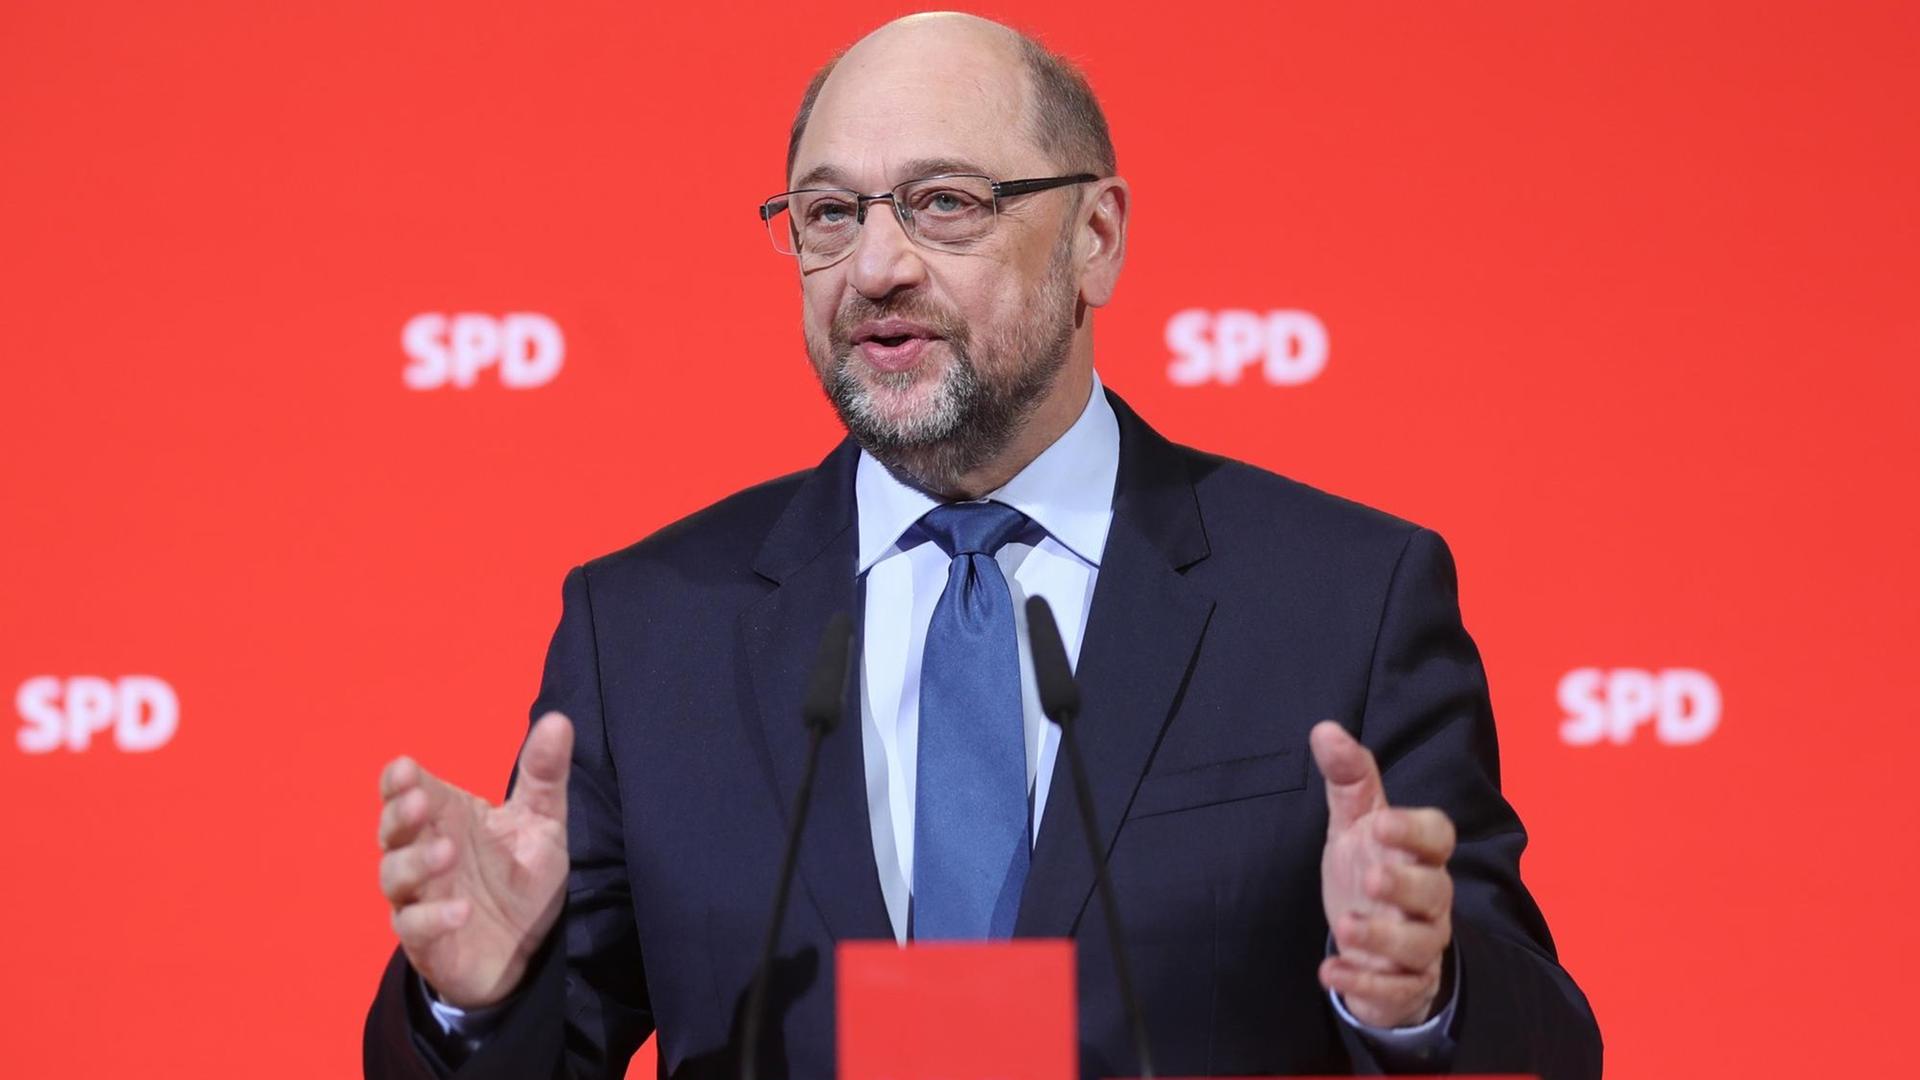 Schulz steht vor einer roten Wand mit SPD-Schriftzügen, spricht und gestikuliert mit beiden Händen.